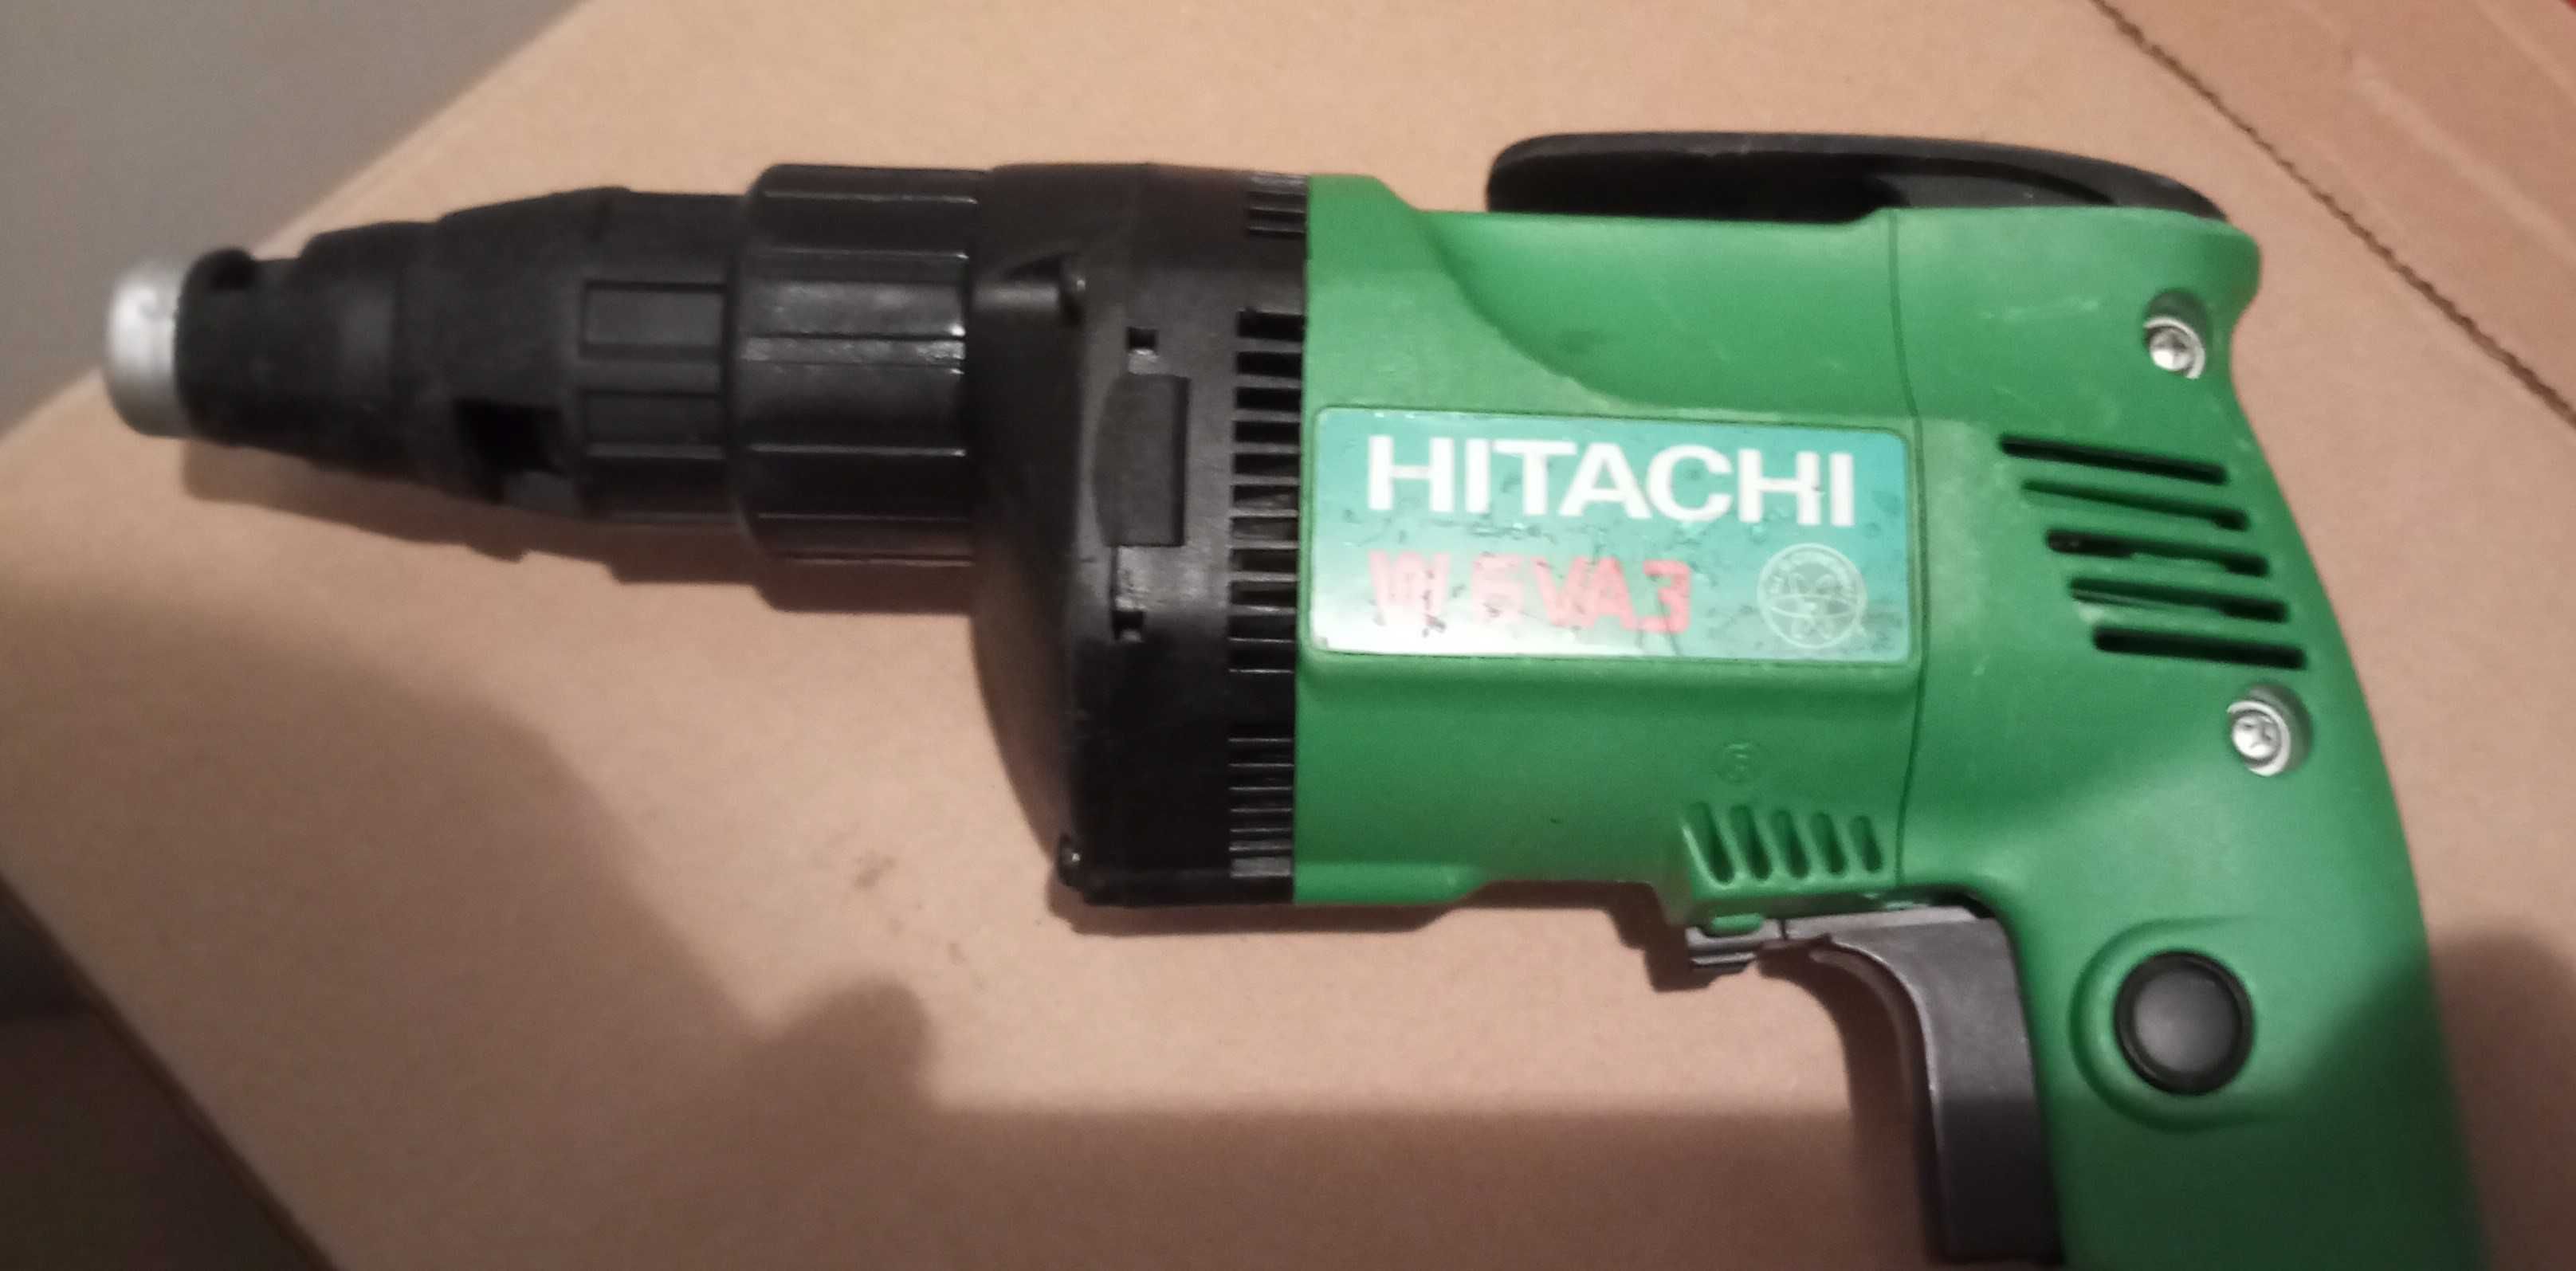 Zakrętarka Hitachi W6VA3 600W do suchej zabudowy karton gips HEX Bity